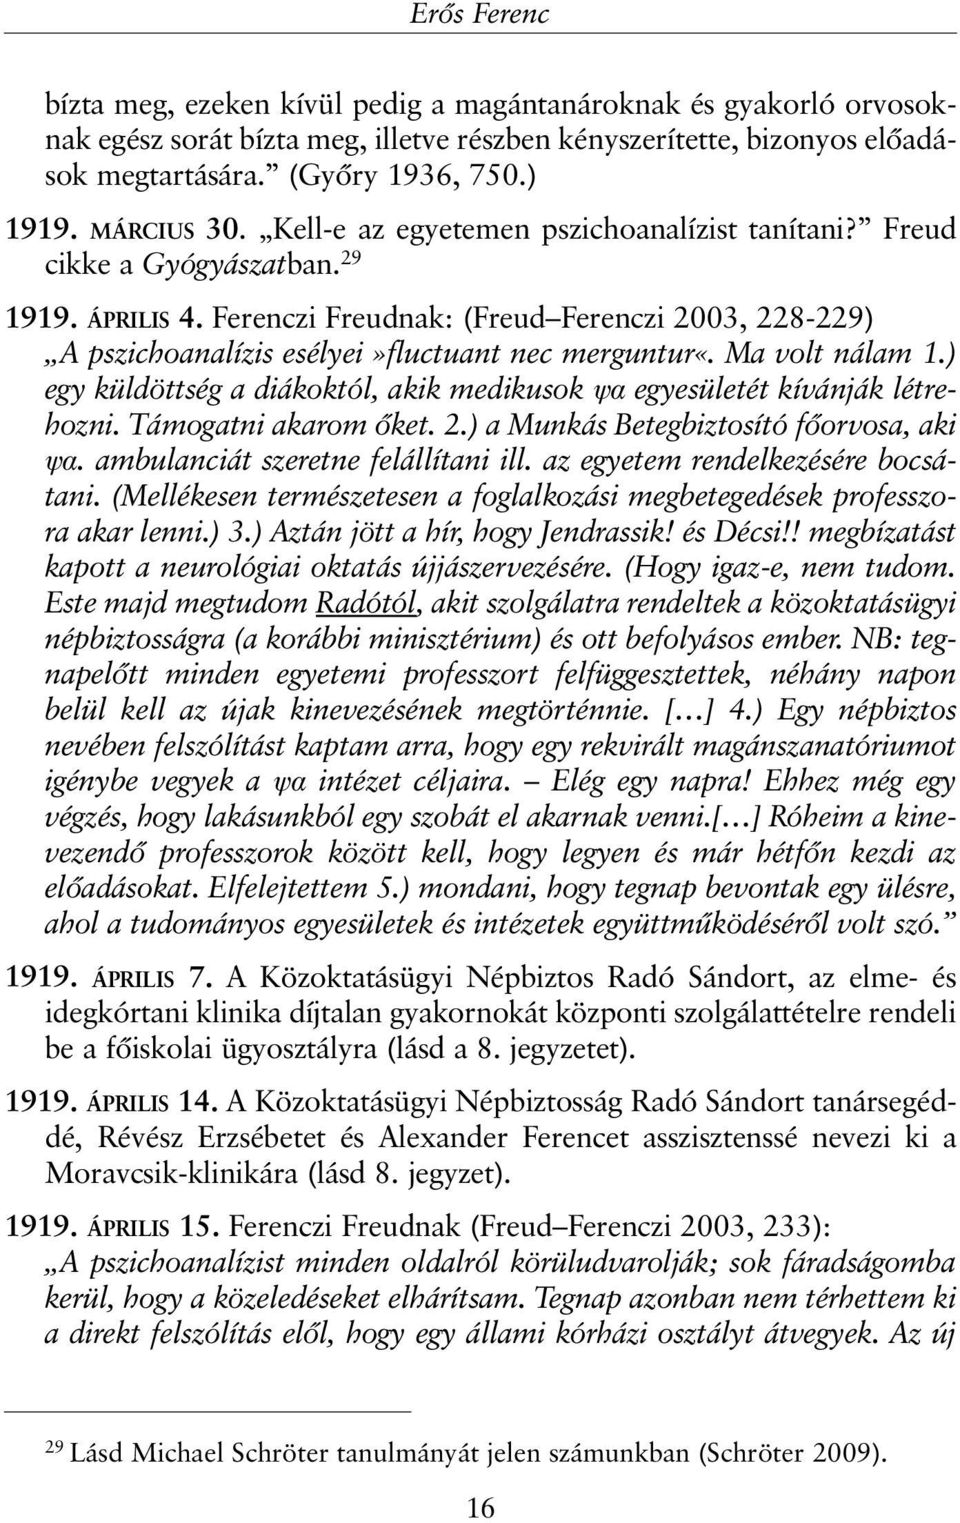 Ferenczi Freudnak: (Freud Ferenczi 2003, 228-229) A pszichoanalízis esélyei»fluctuant nec merguntur«. Ma volt nálam 1.) egy küldöttség a diákoktól, akik medikusok ψα egyesületét kívánják létrehozni.